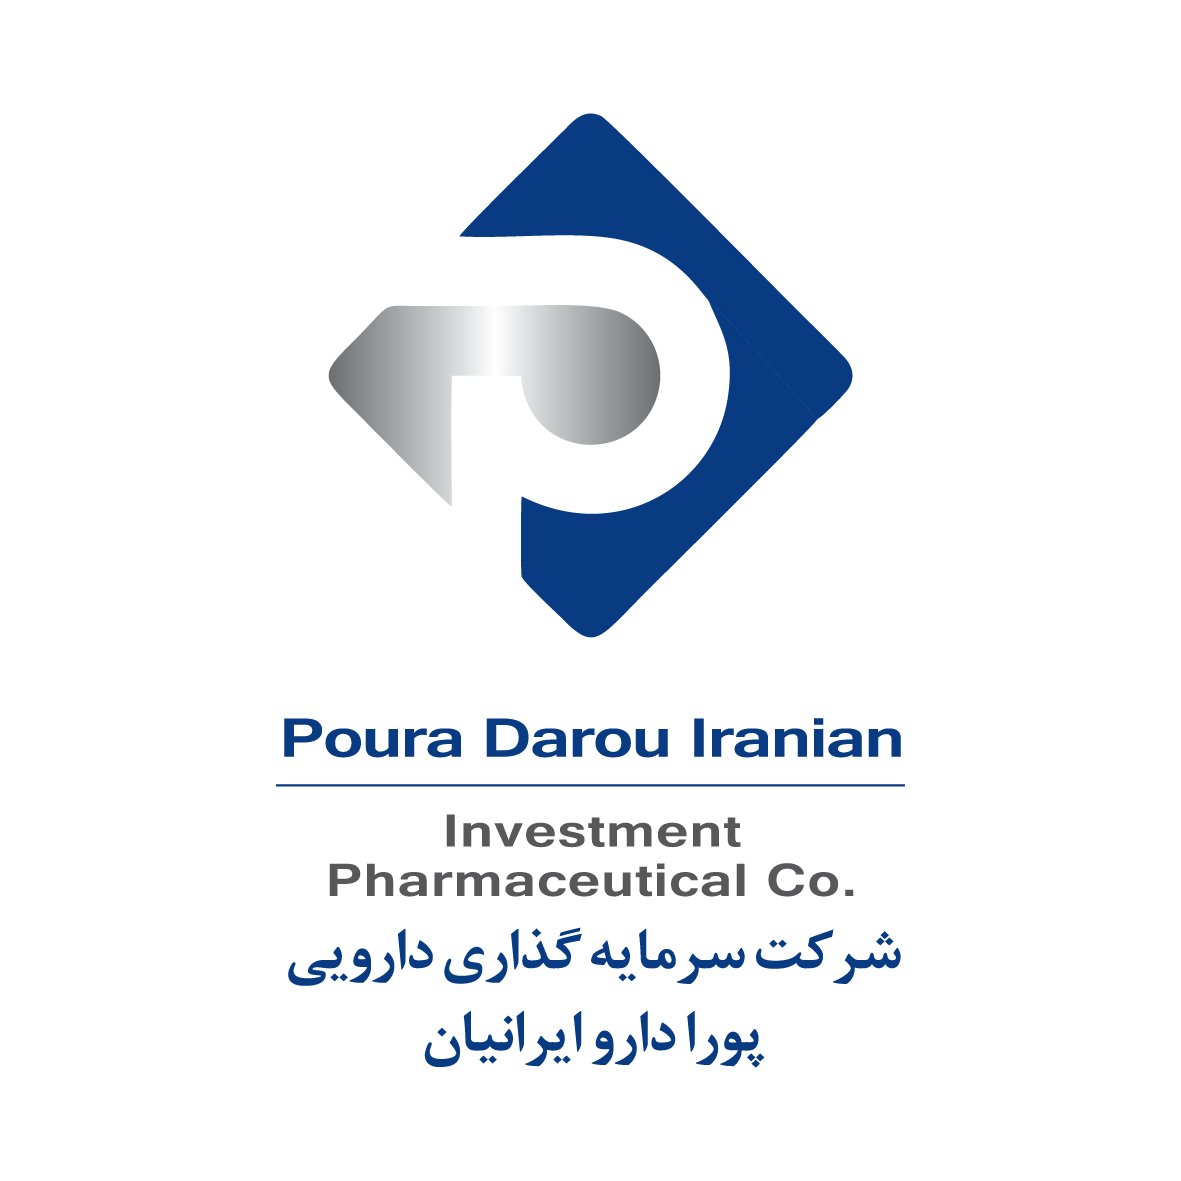 مدیر برند | Brand Manager - سرمایه گذاری داروئی پورا دارو ایرانیان | Sarmayegozari Daroui Poura Darou Iranian